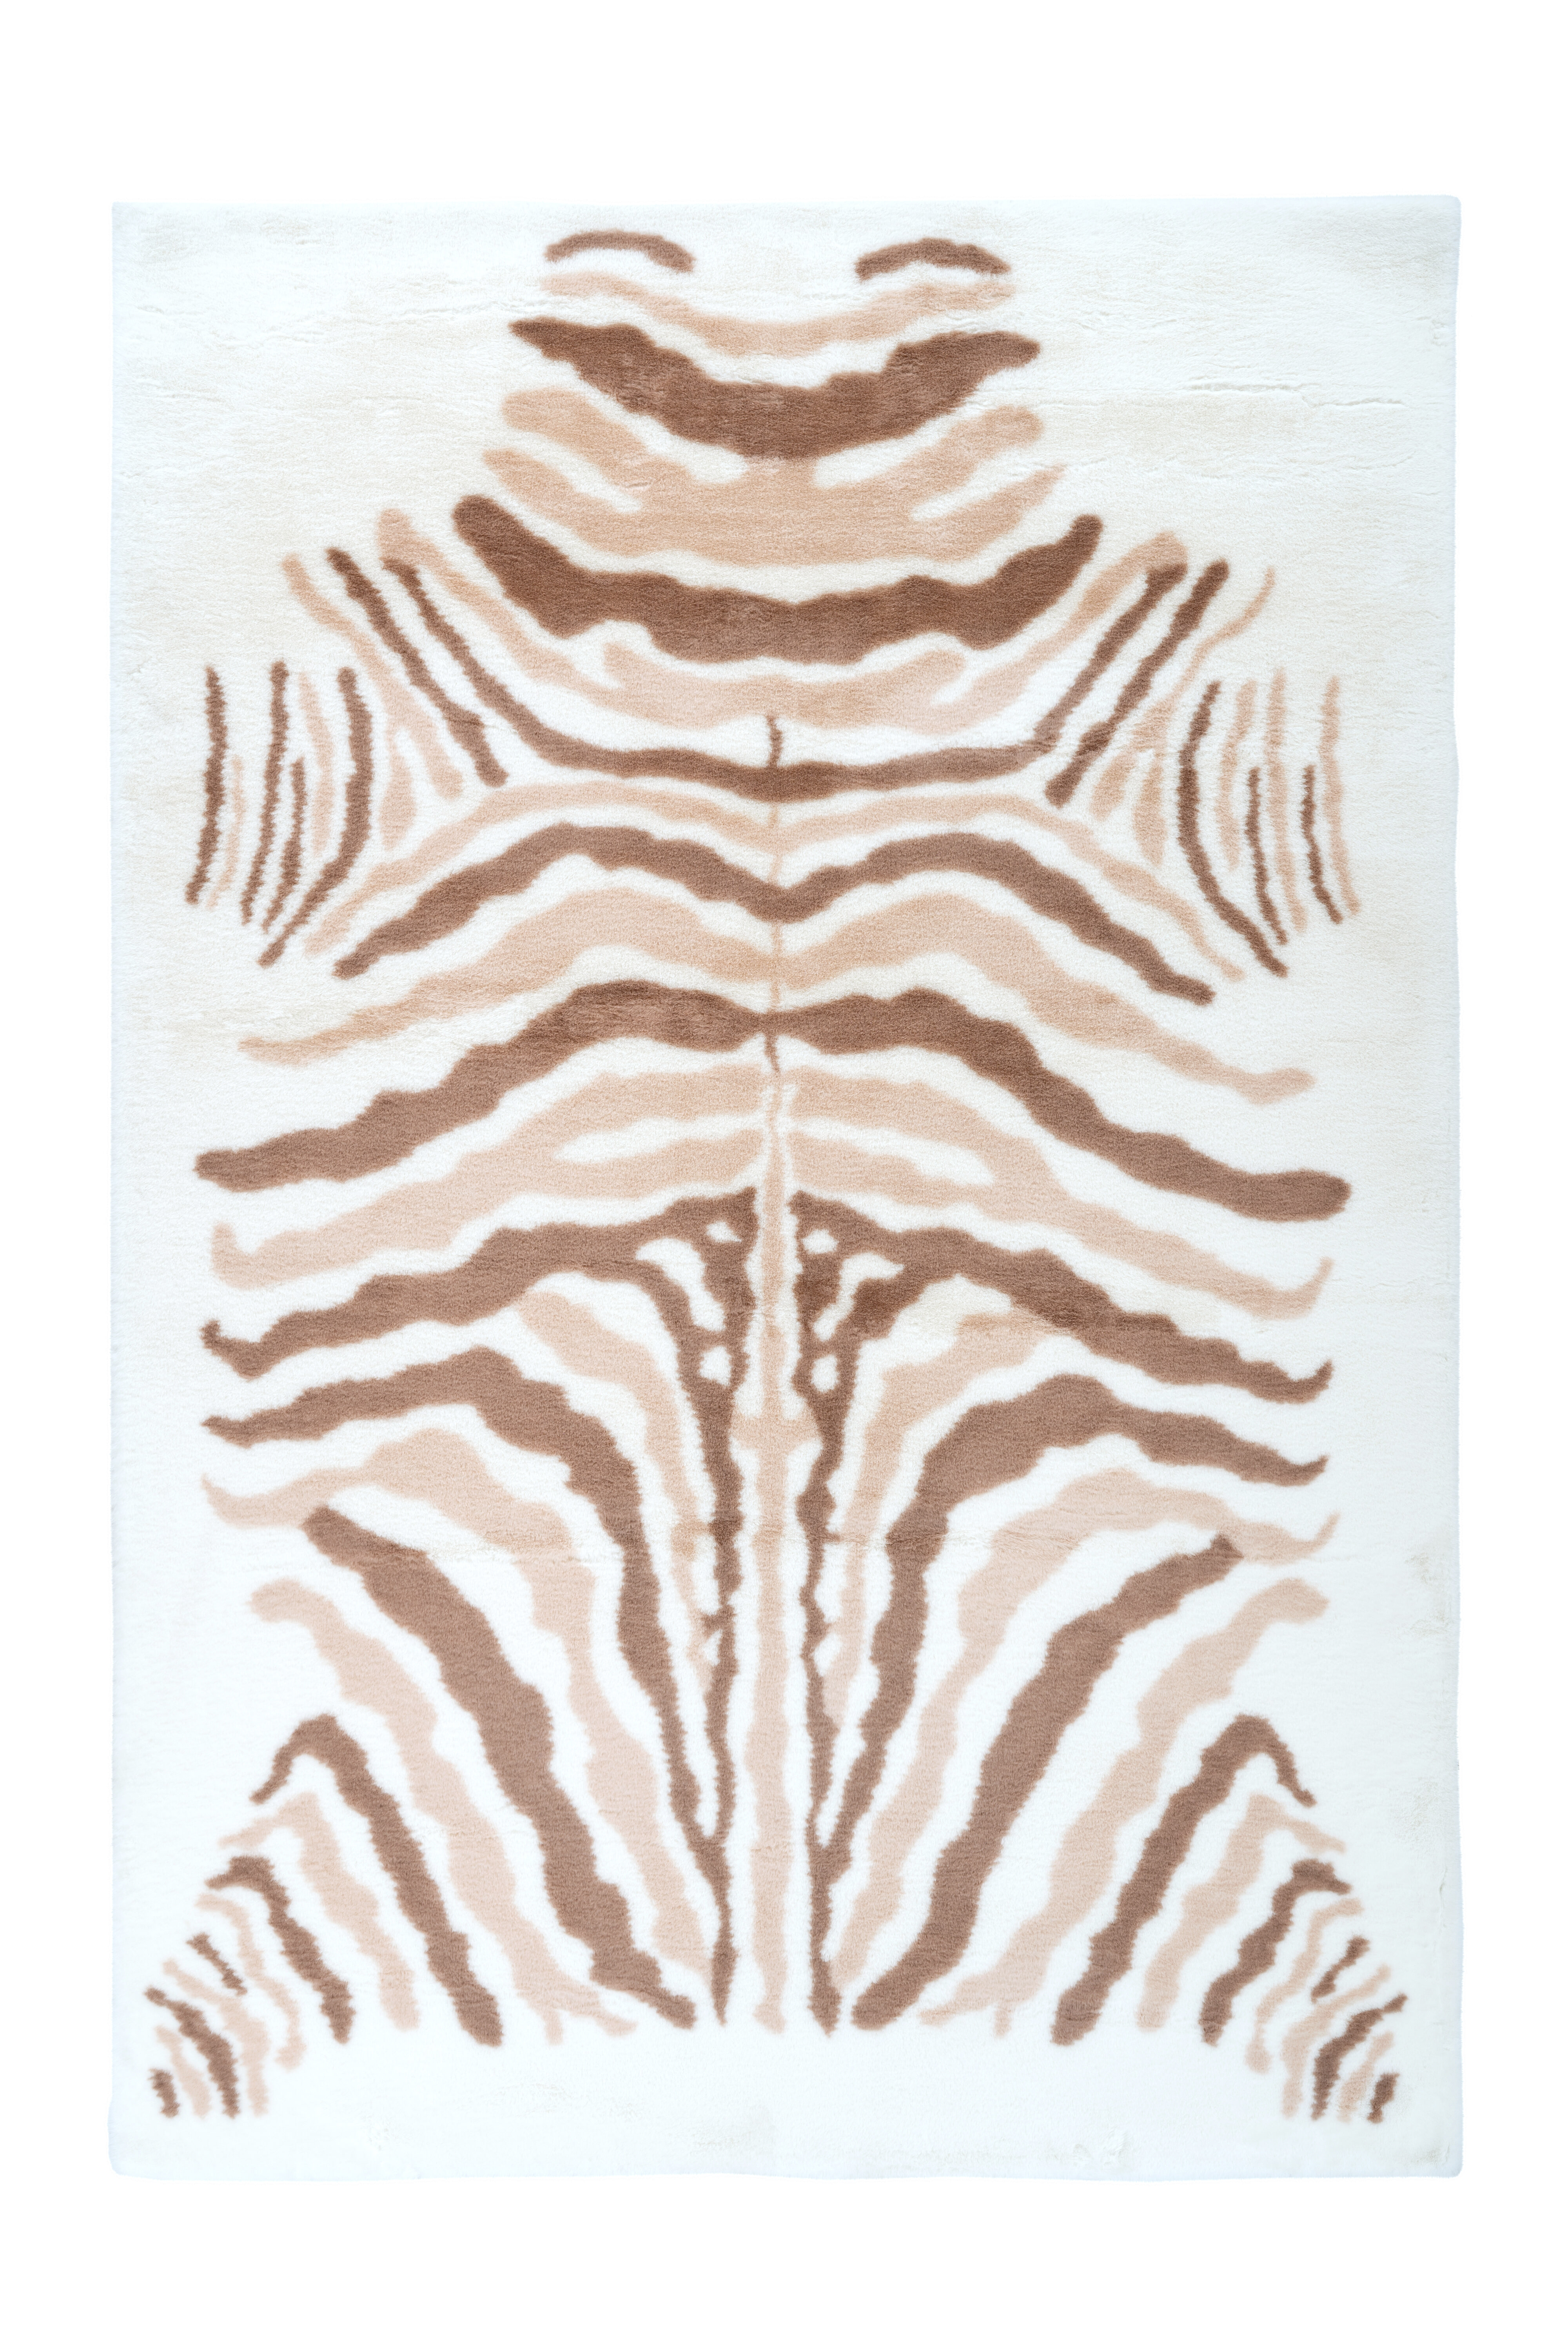 Kayoom Vloerkleed 'Rabbit Animal' kleur ivoor / bruin, 160 x 230cm